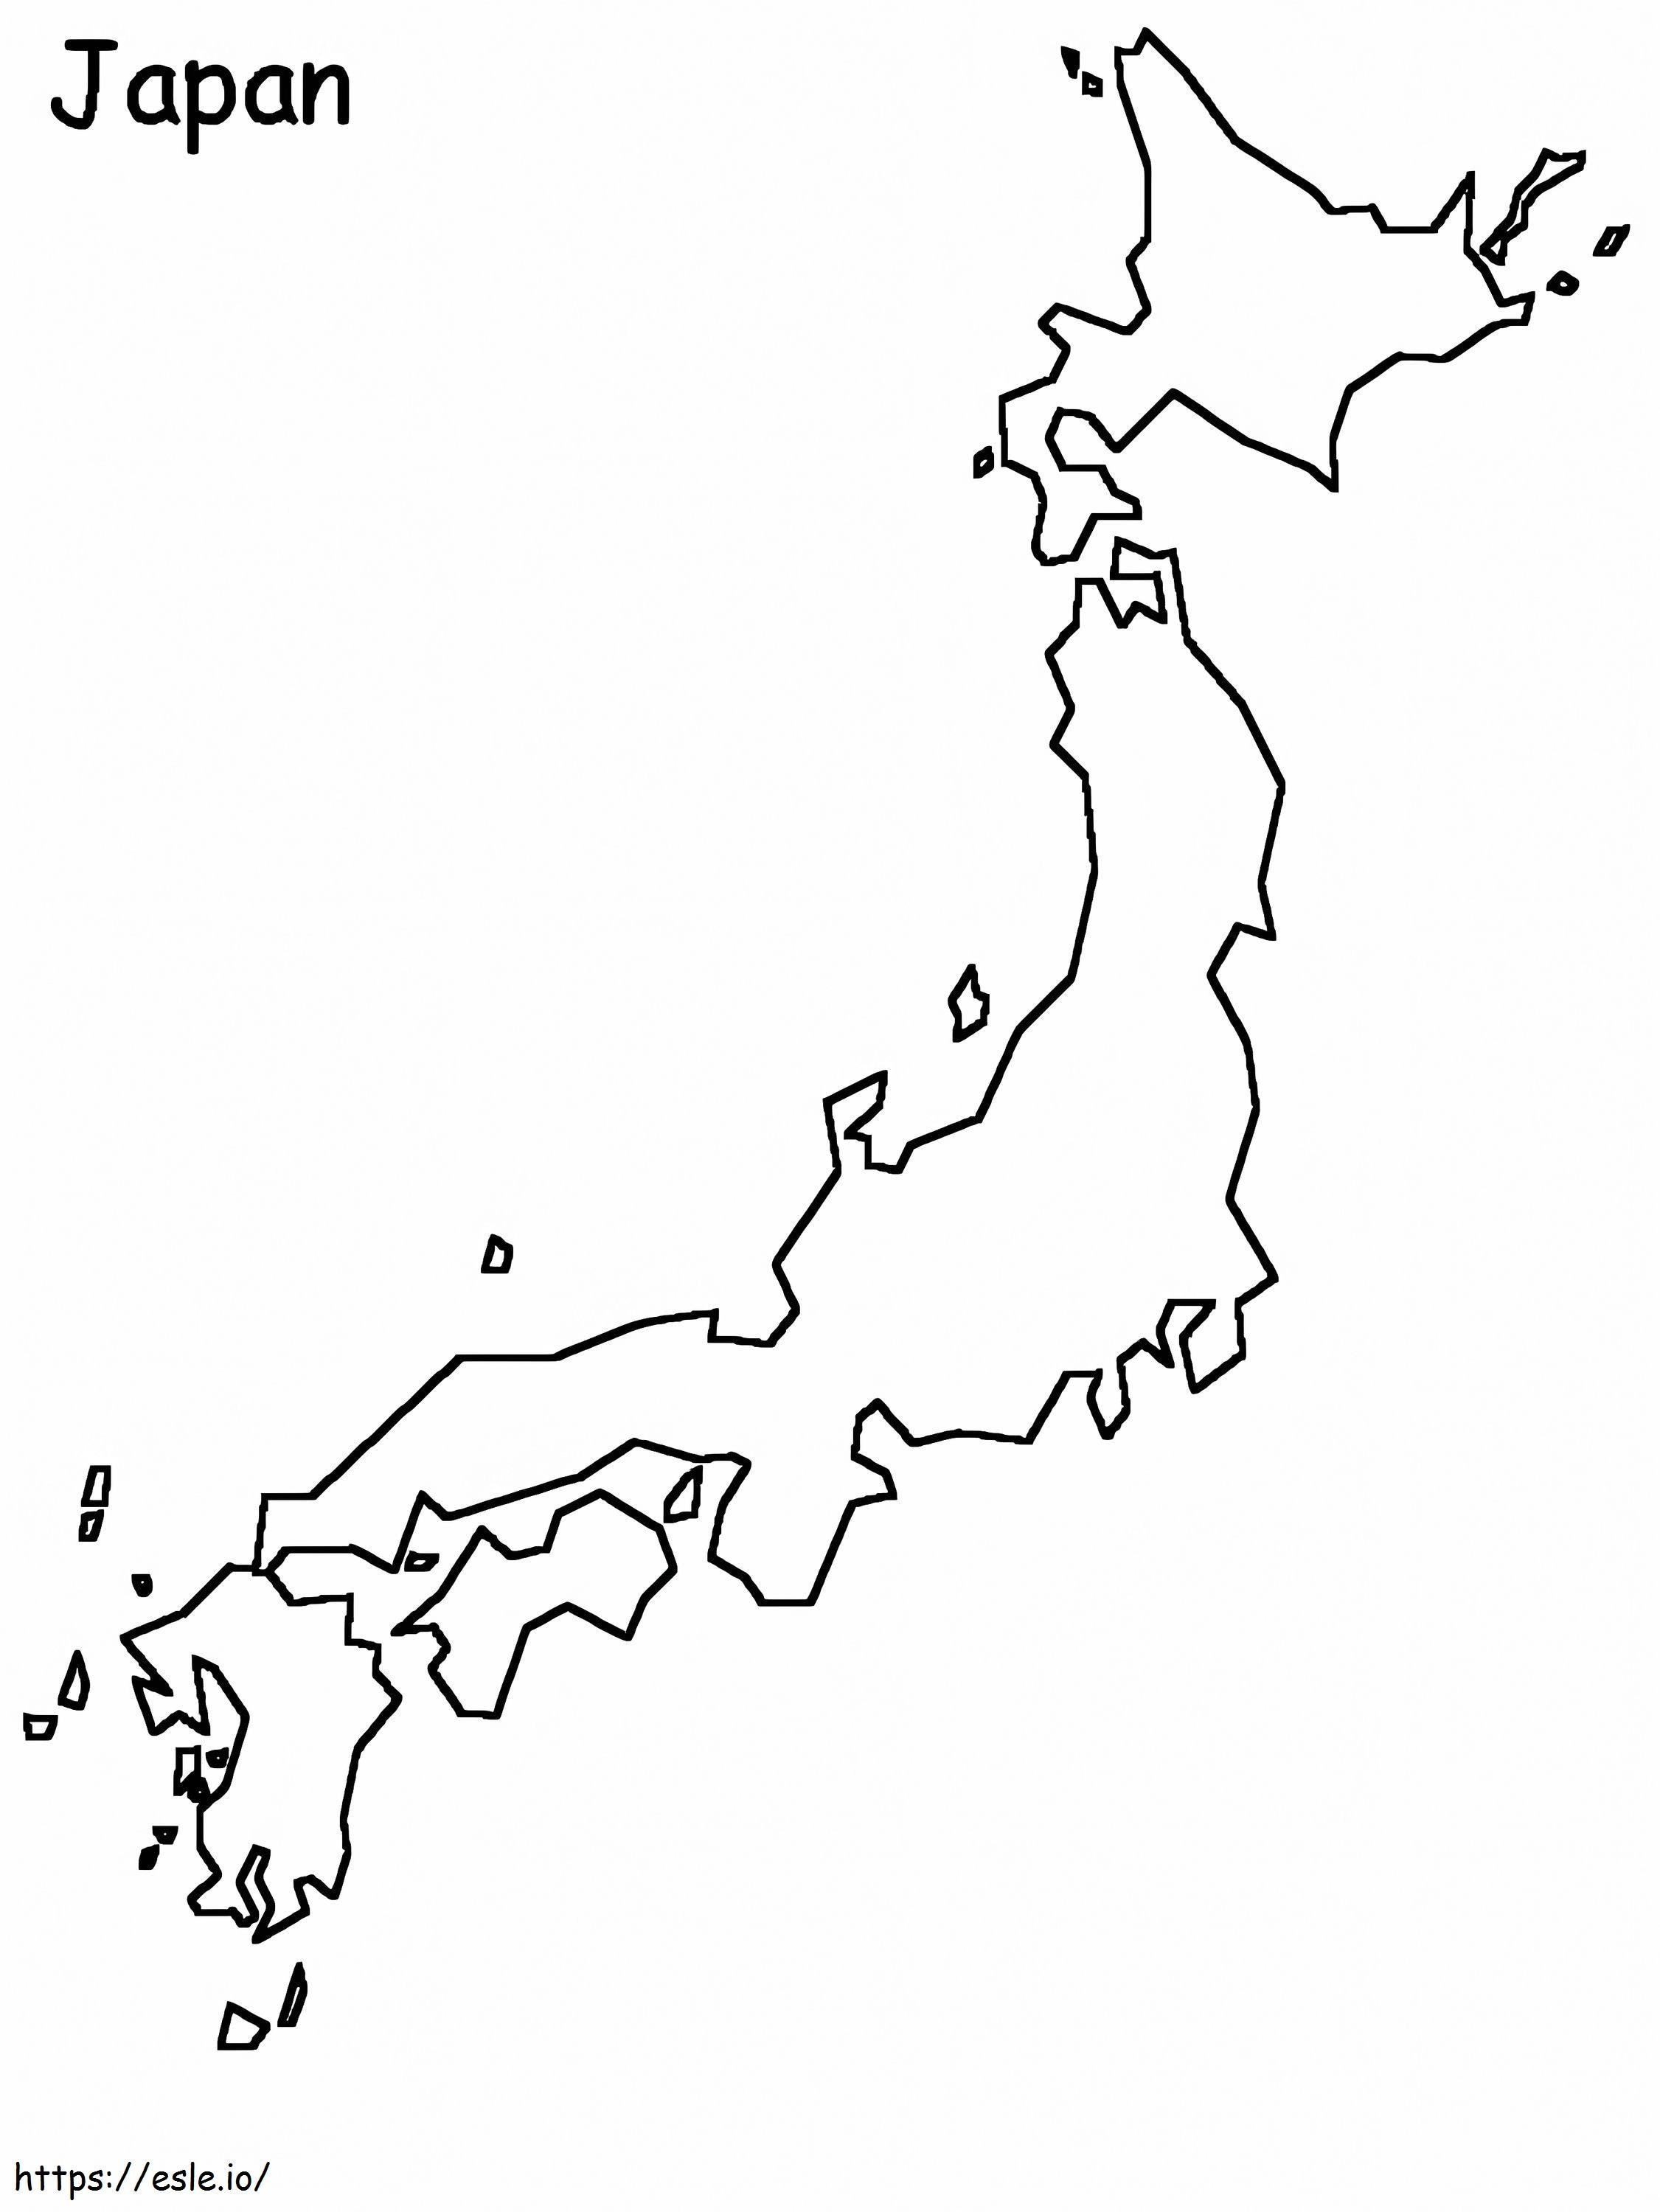 Japonya Haritası Boyama Sayfası boyama